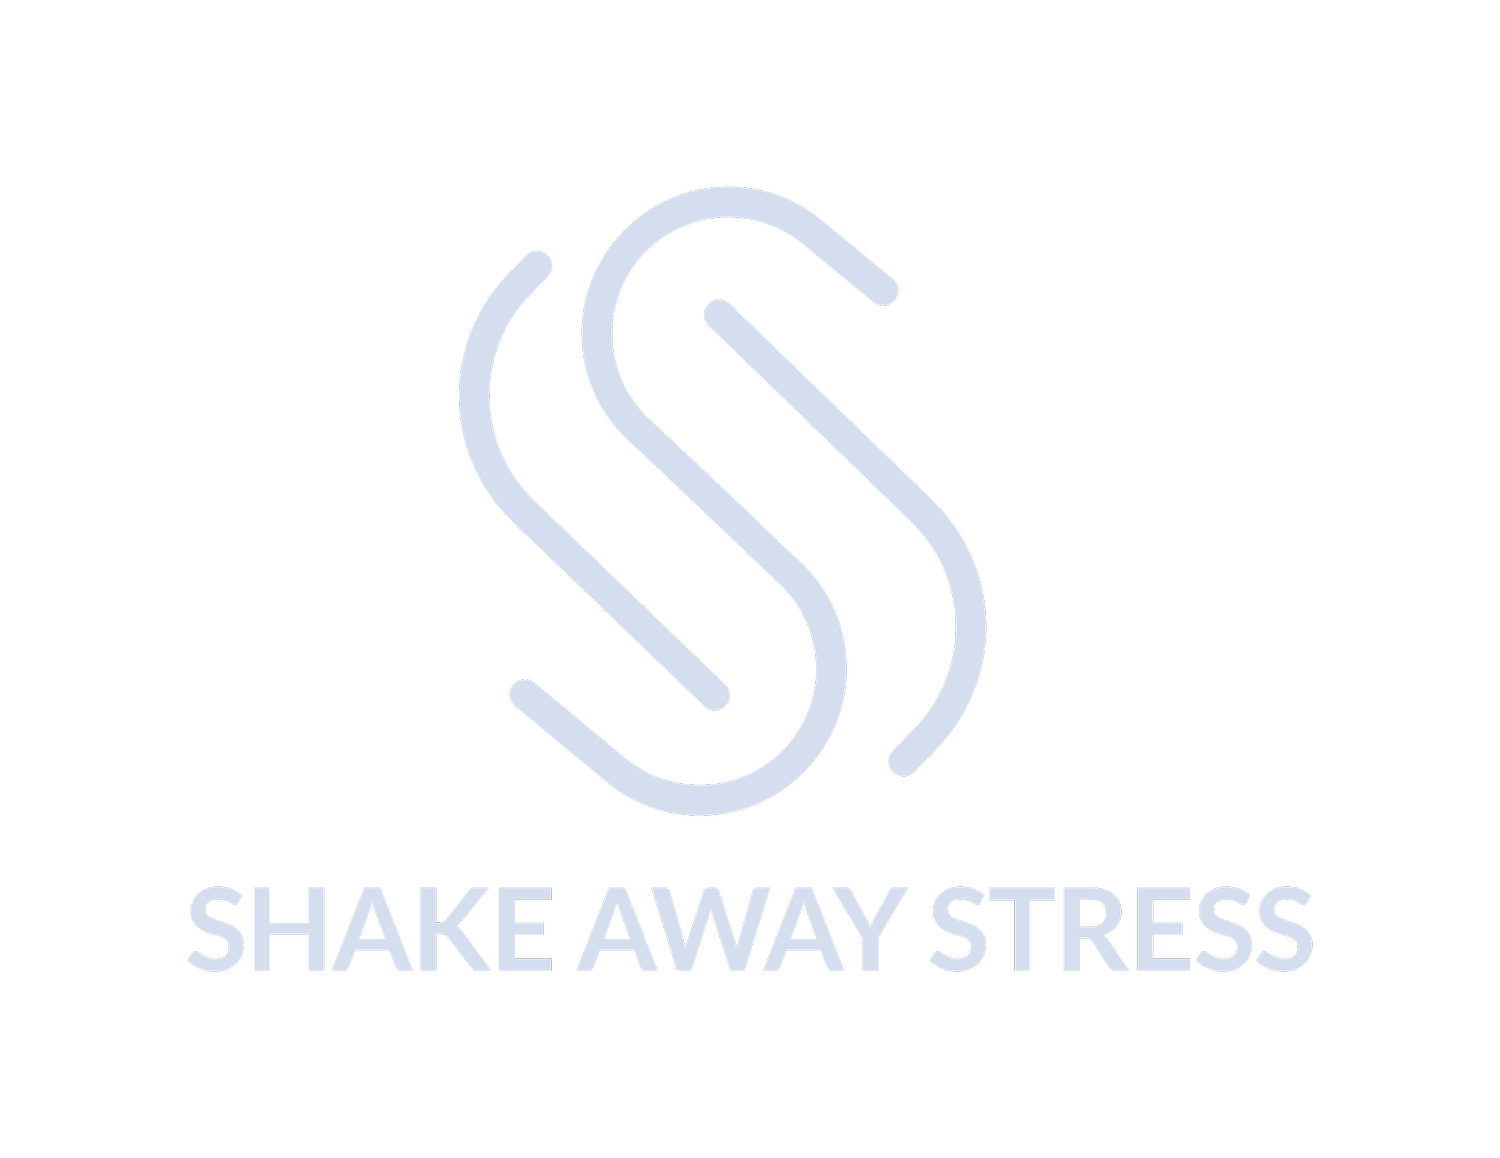 Shake Away Stress